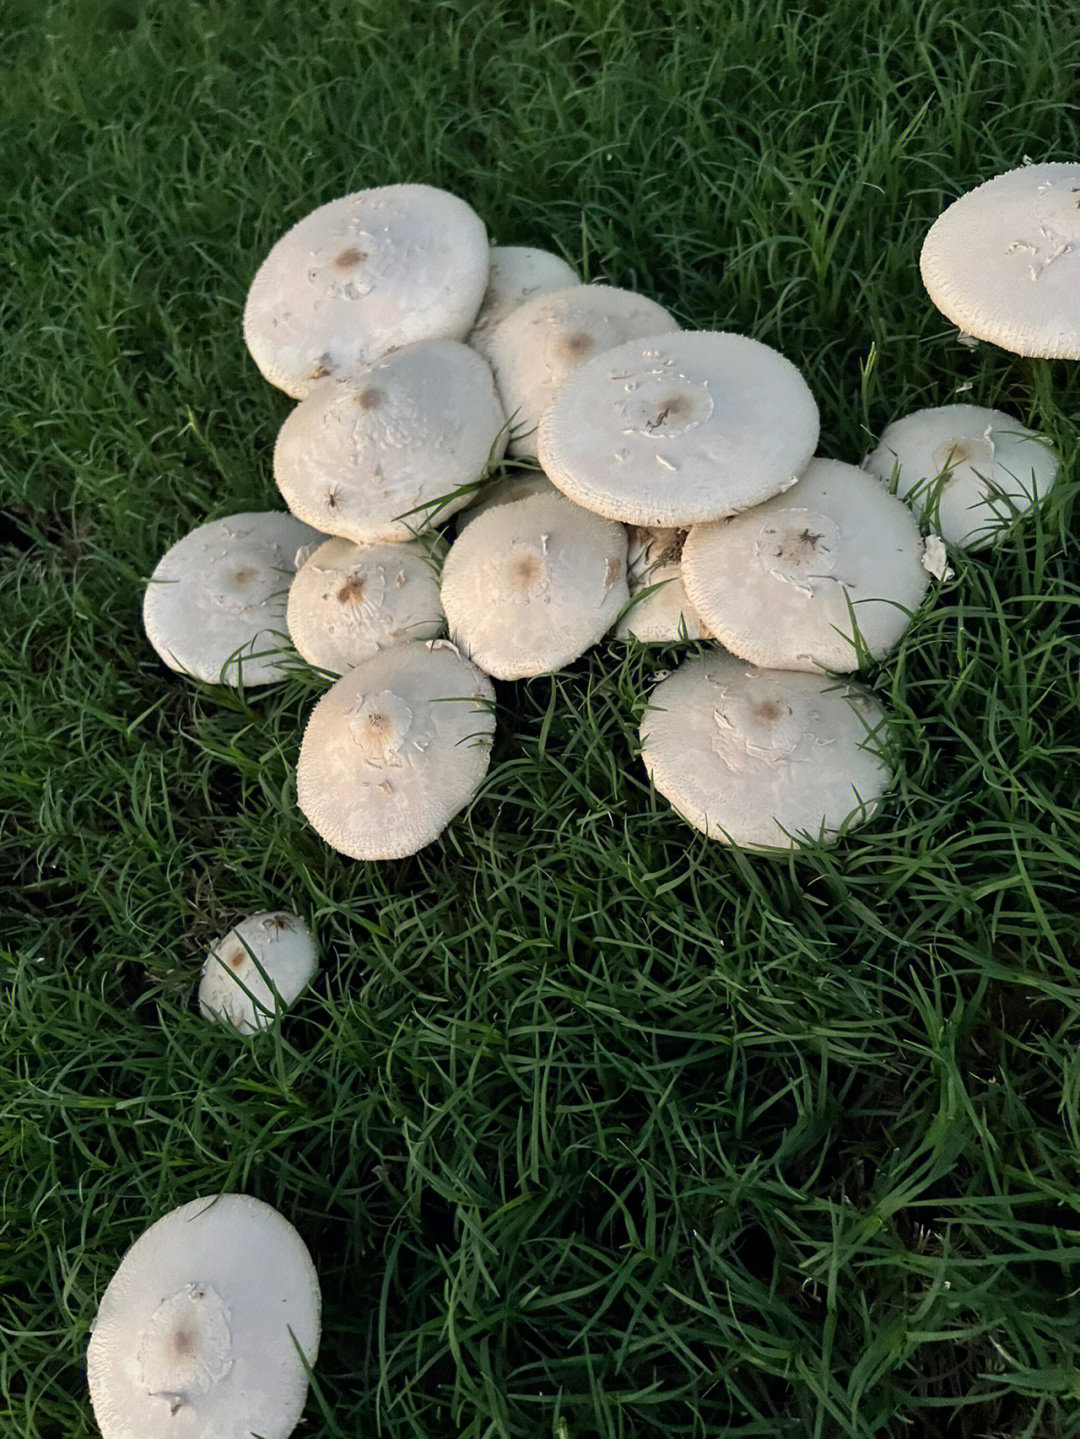 雨后长的野蘑菇能吃吗